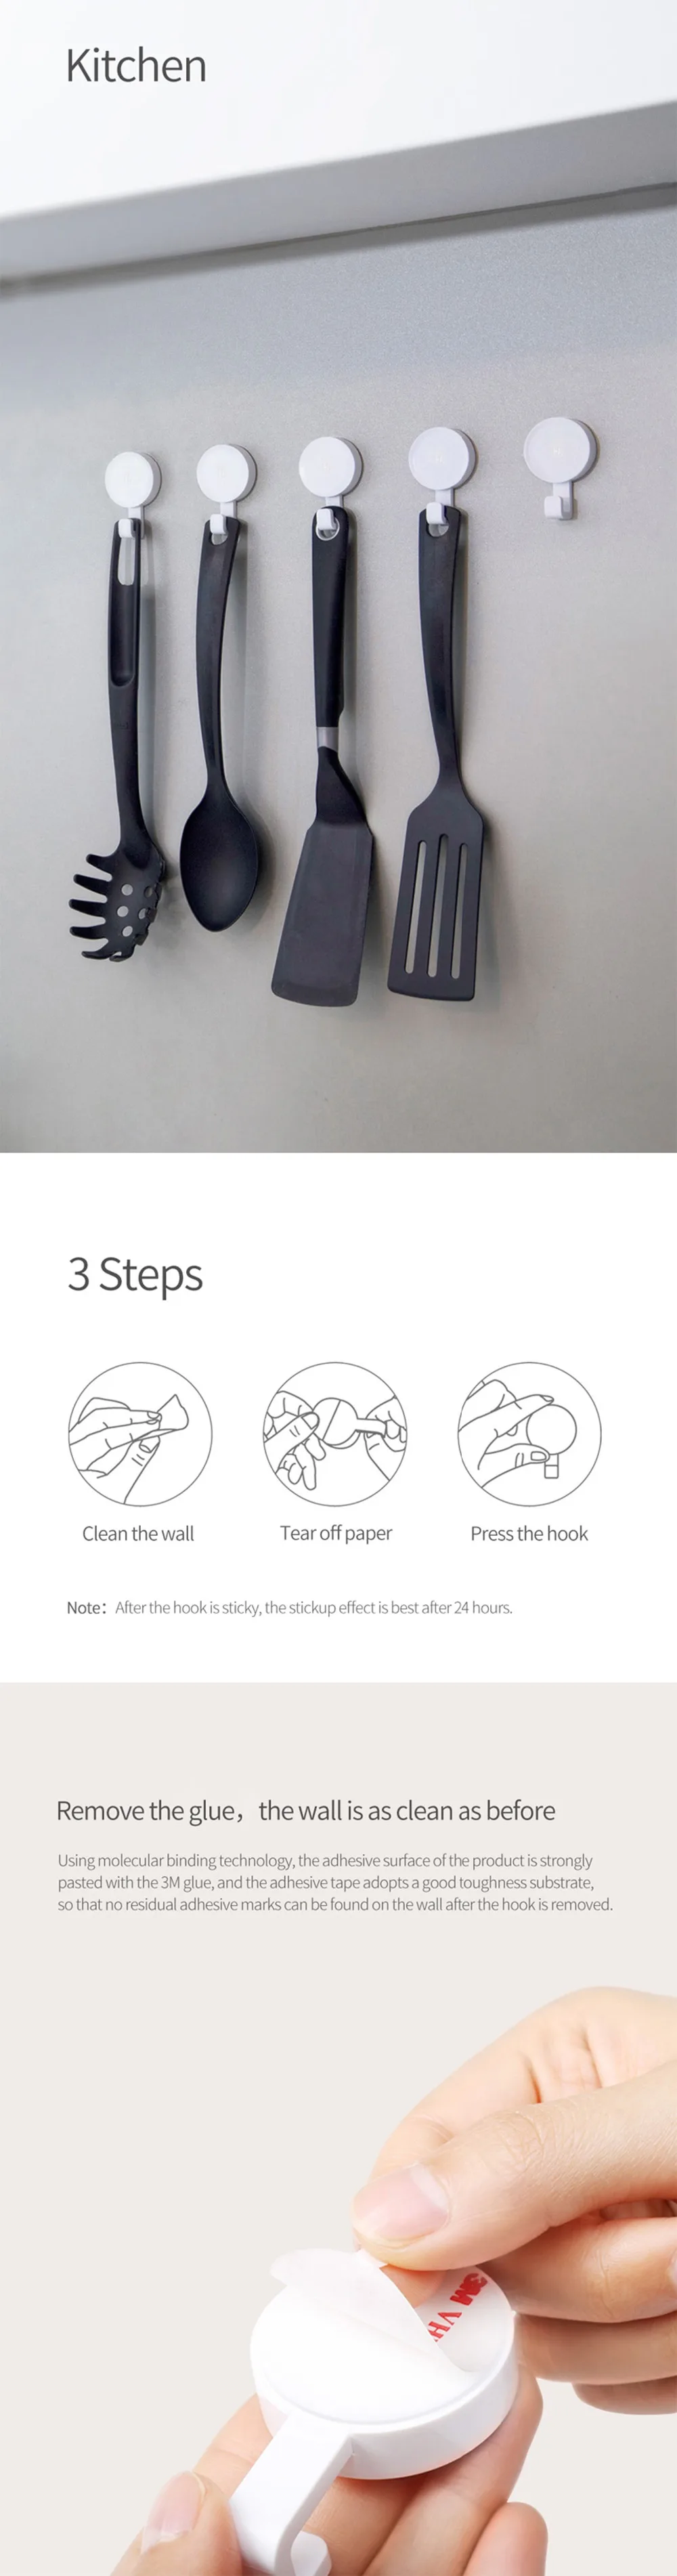 Xiaomi mijia HL настенные крючки для спальни, кухни, настенные крючки 3 кг Максимальная нагрузка для xiaomi smart home 6 в 1 крепкие крючки, набор для мелочей